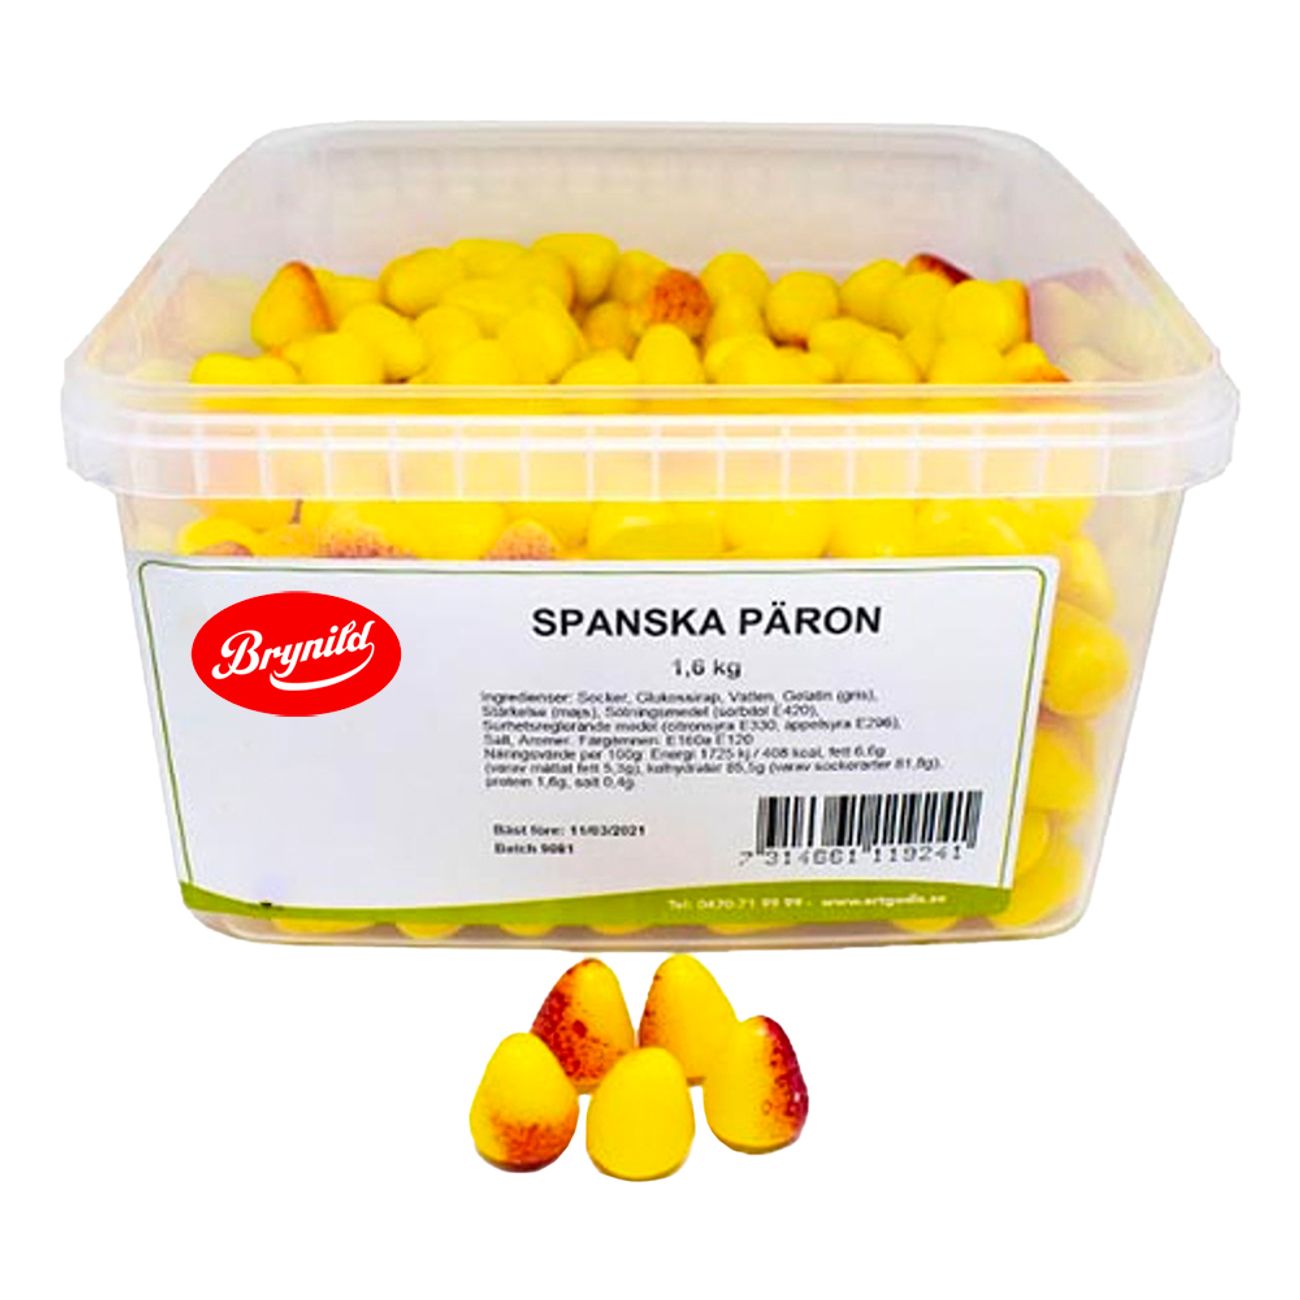 brynild-spanska-paron-storpack-90223-1